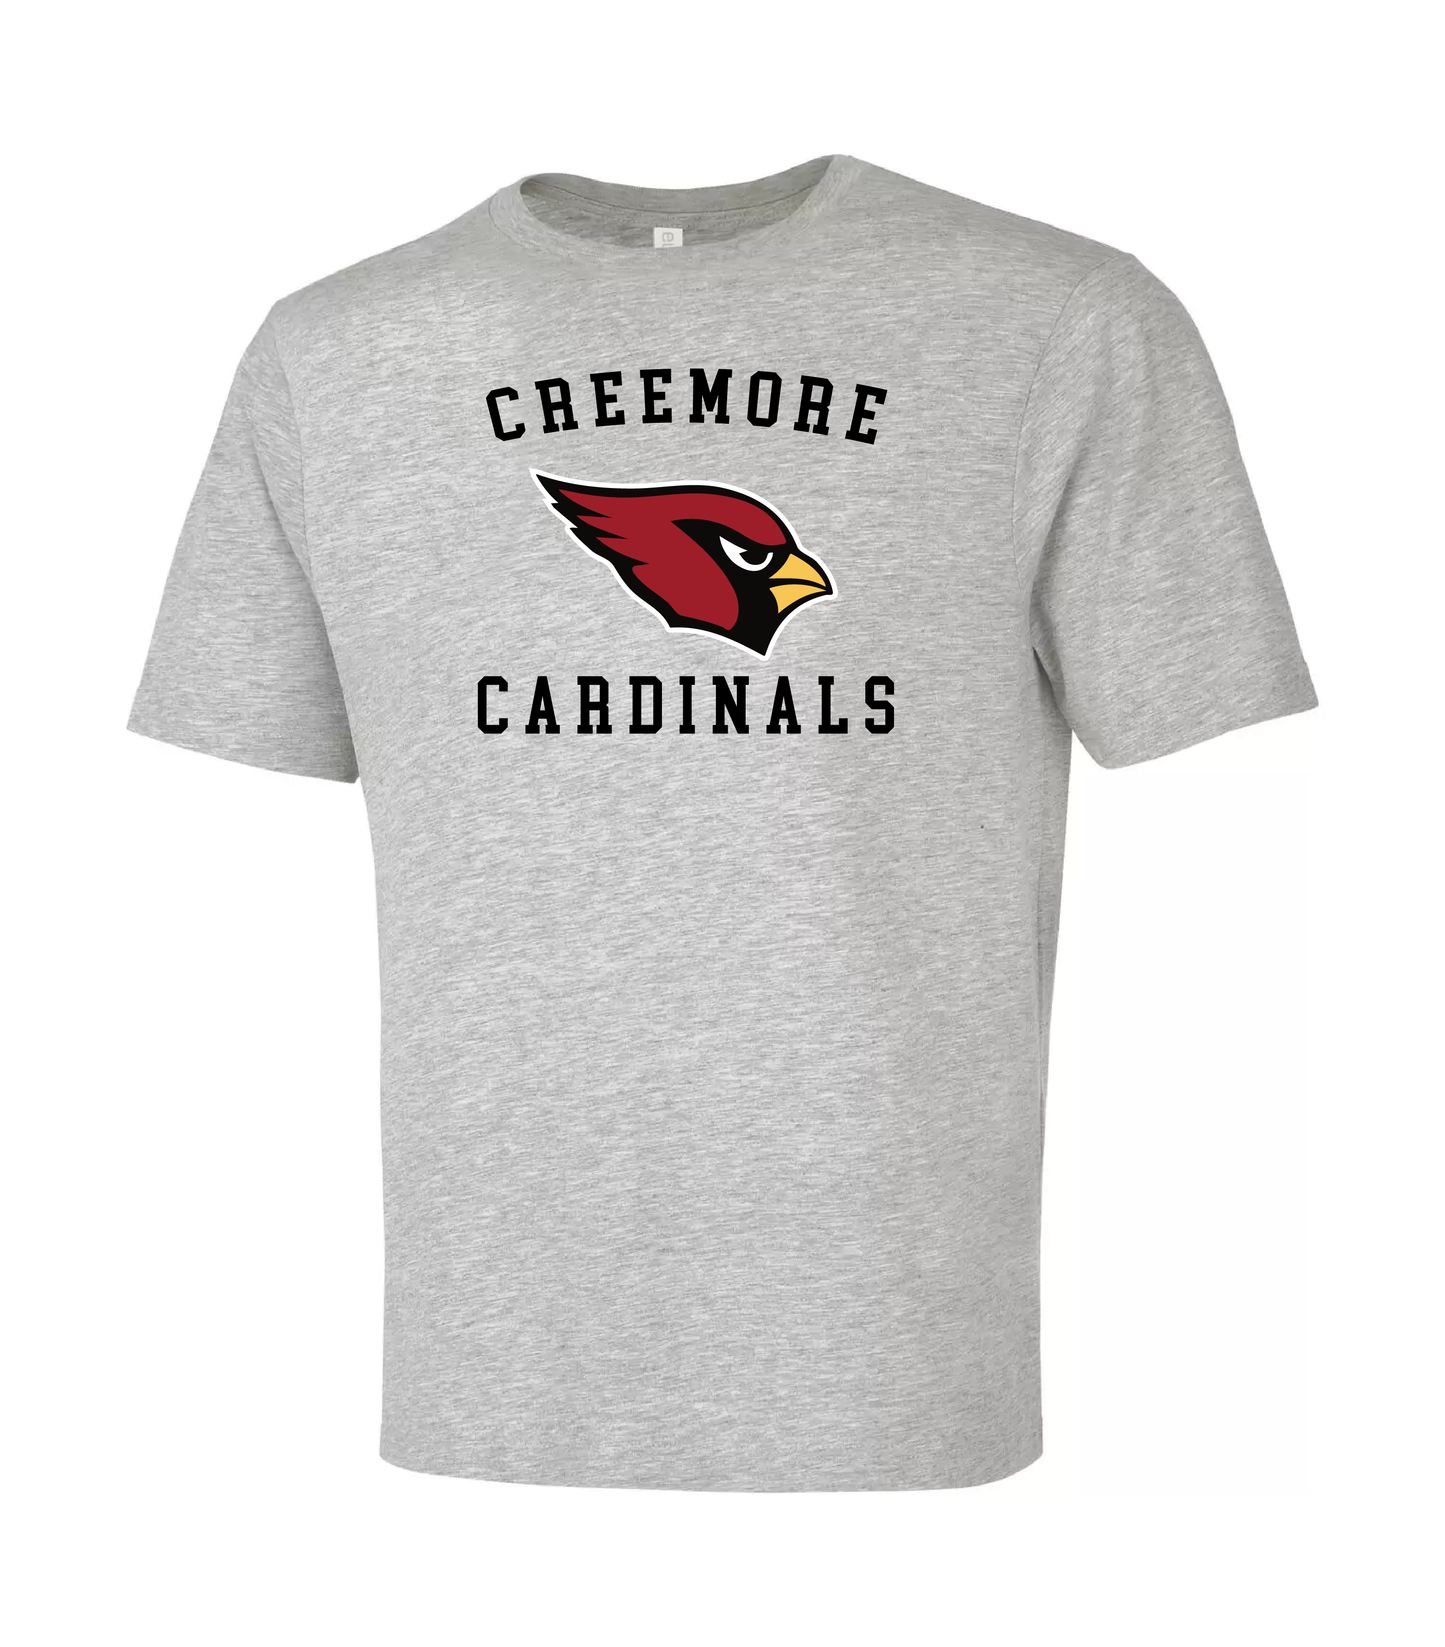 Creemore Cardinals Tshirt